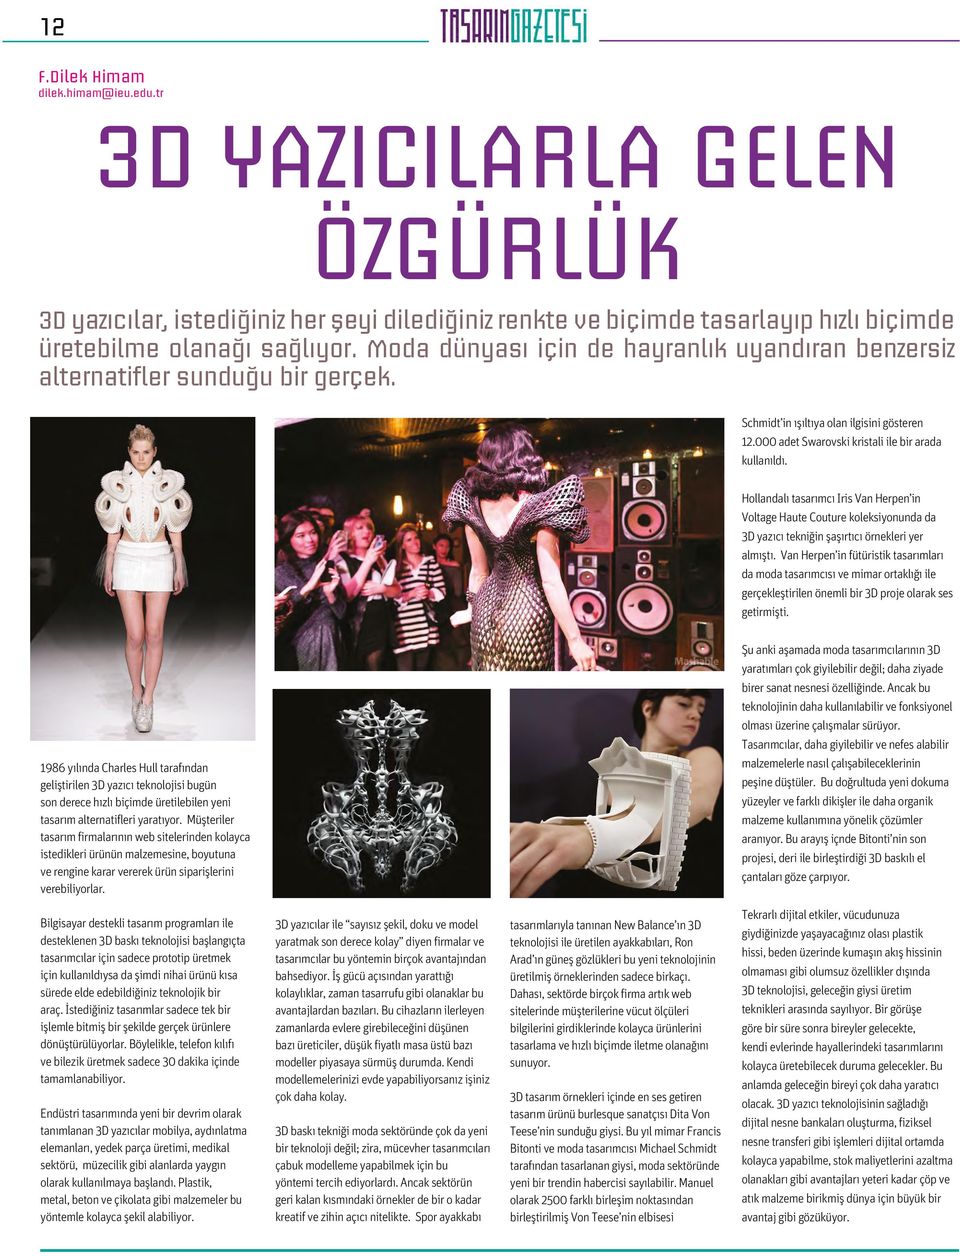 Hollandalı tasarımcı Iris Van Herpen in Voltage Haute Couture koleksiyonunda da 3D yazıcı tekniğin şaşırtıcı örnekleri yer almıştı.